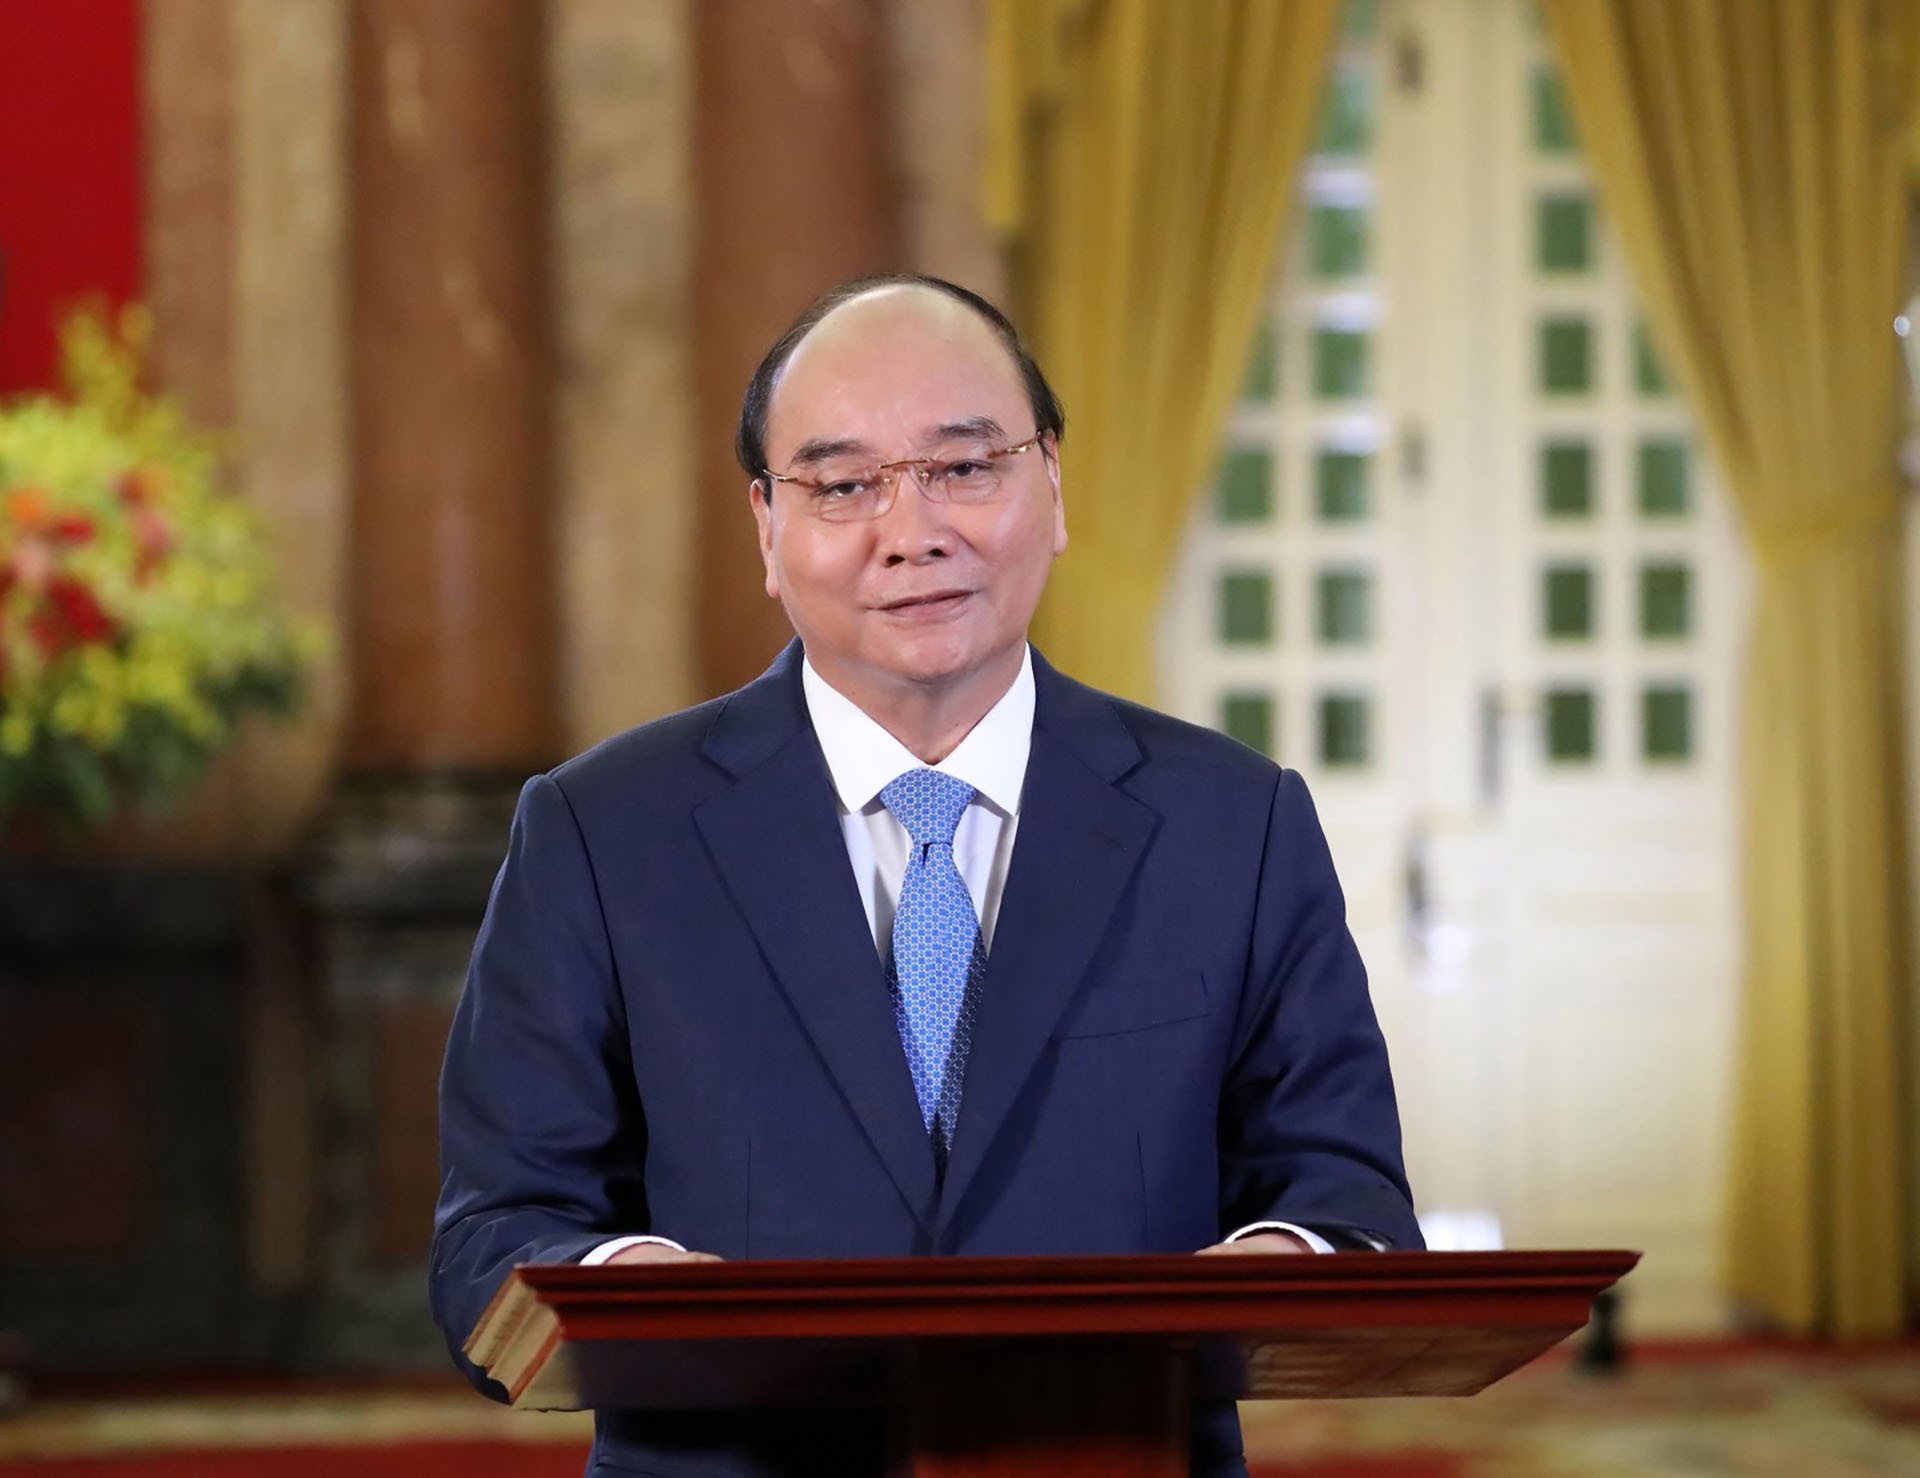 Chủ tịch nước Nguyễn Xuân Phúc được mời phát biểu chính, định hướng cho thảo luận tại phiên đầu tiên của Hội nghị về phát triển bền vững và biến đổi khí hậu.